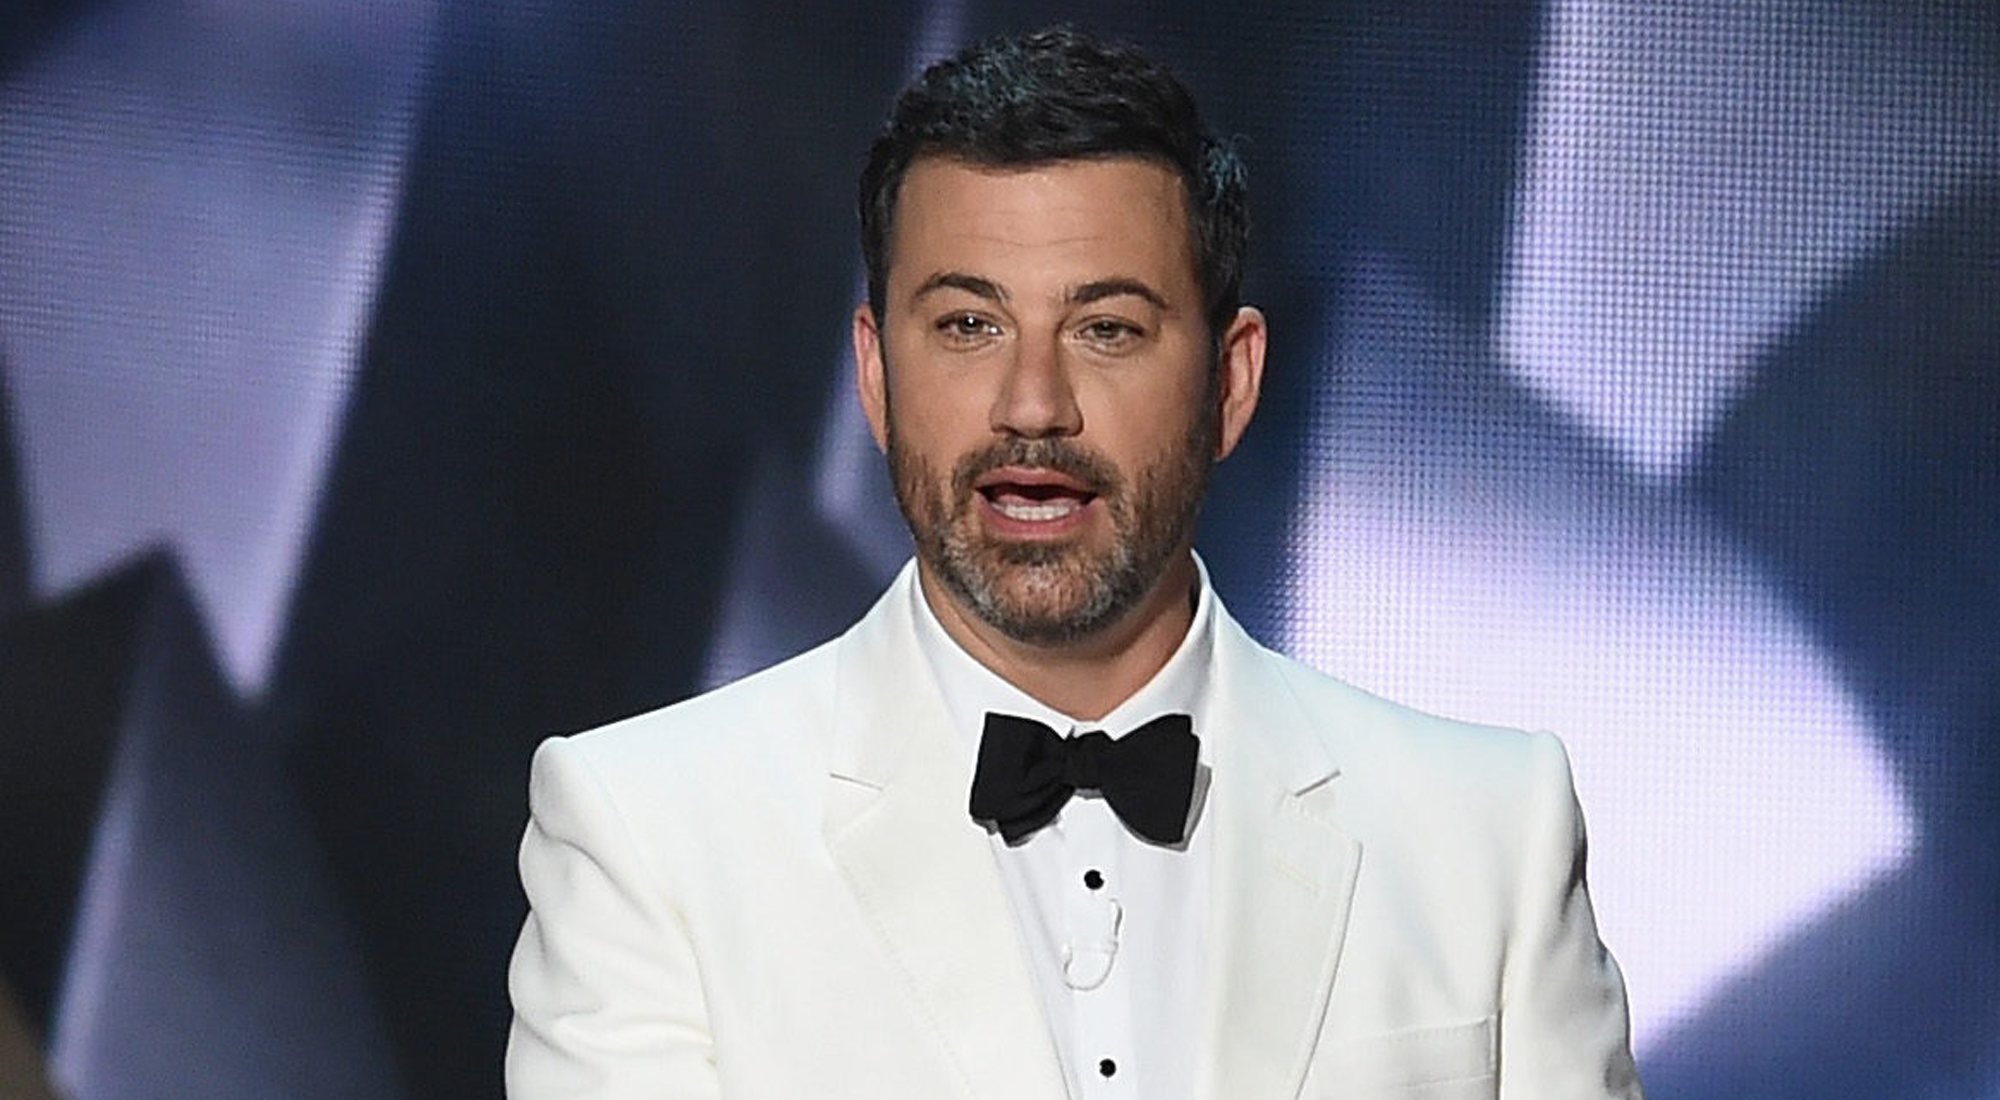 Jimmy Kimmel conducirá la gala de los Premios Emmy 2020